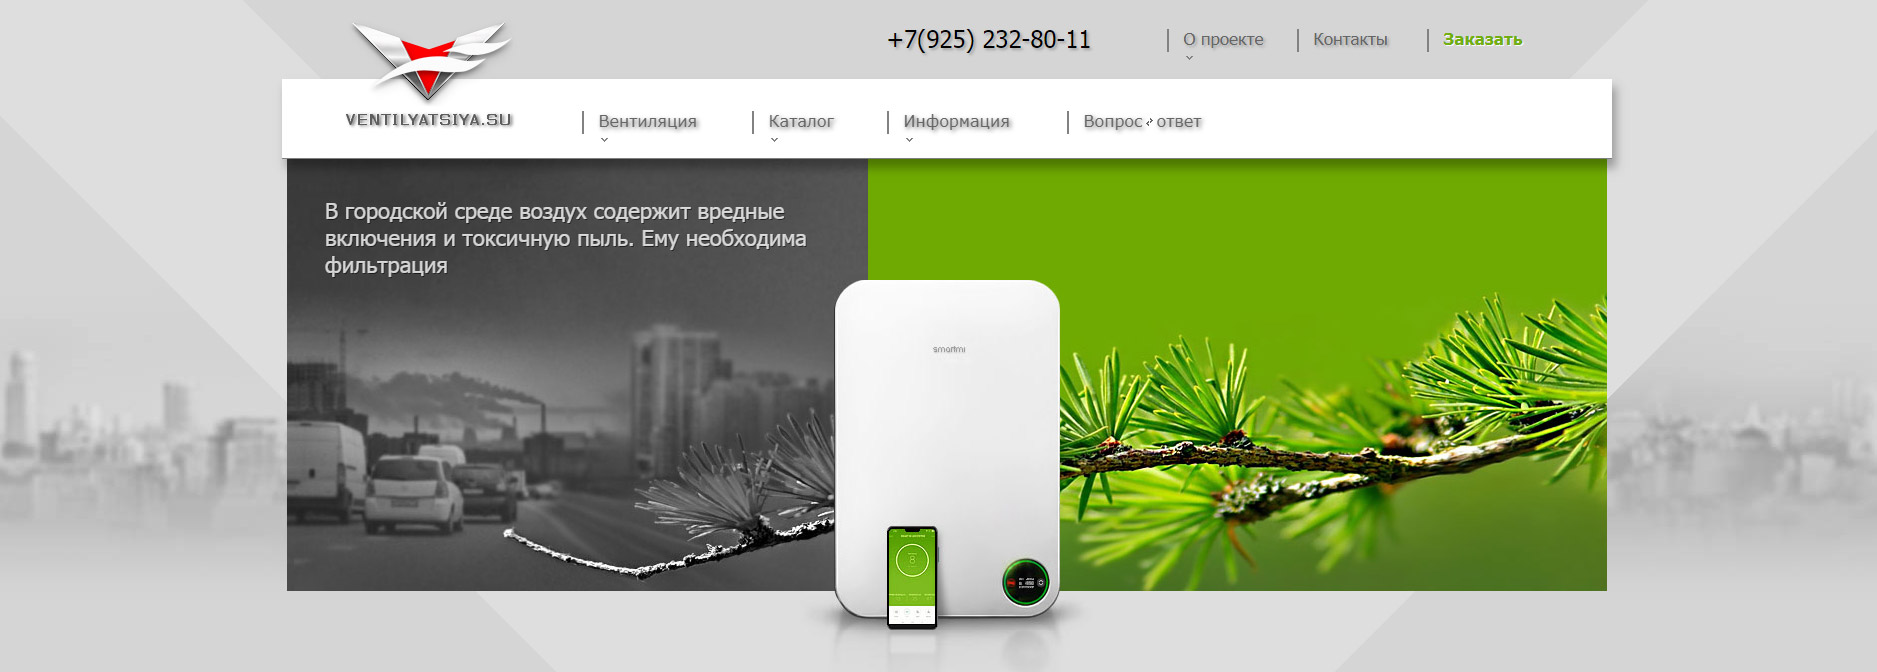 Сайт систем приточной вентиляции в Москве